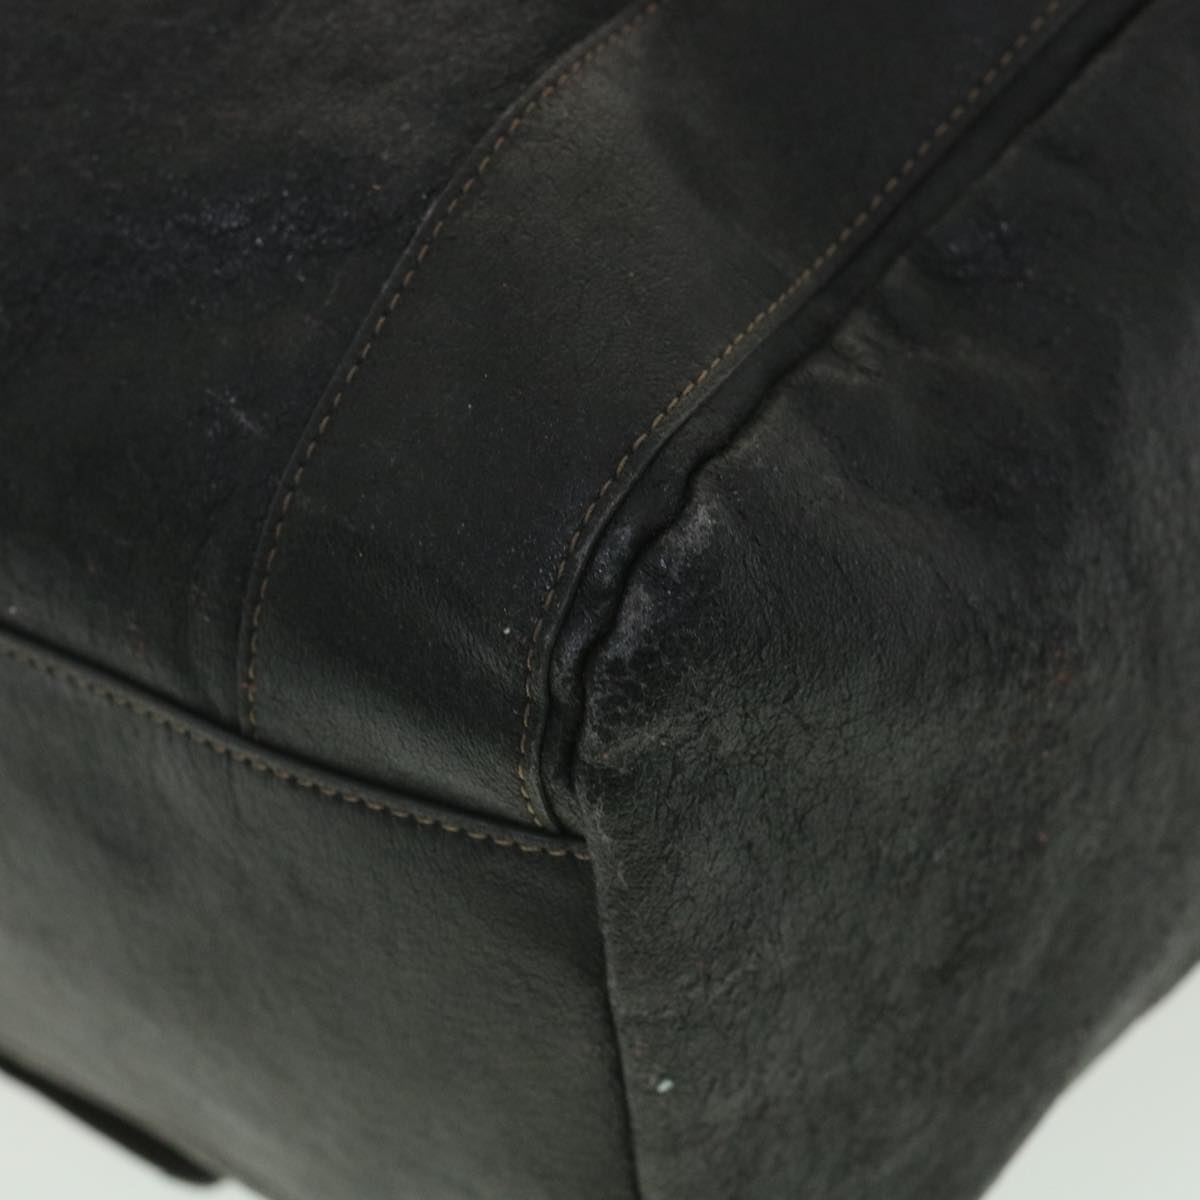 Chloe Shoulder Bag Leather Black Auth 37840